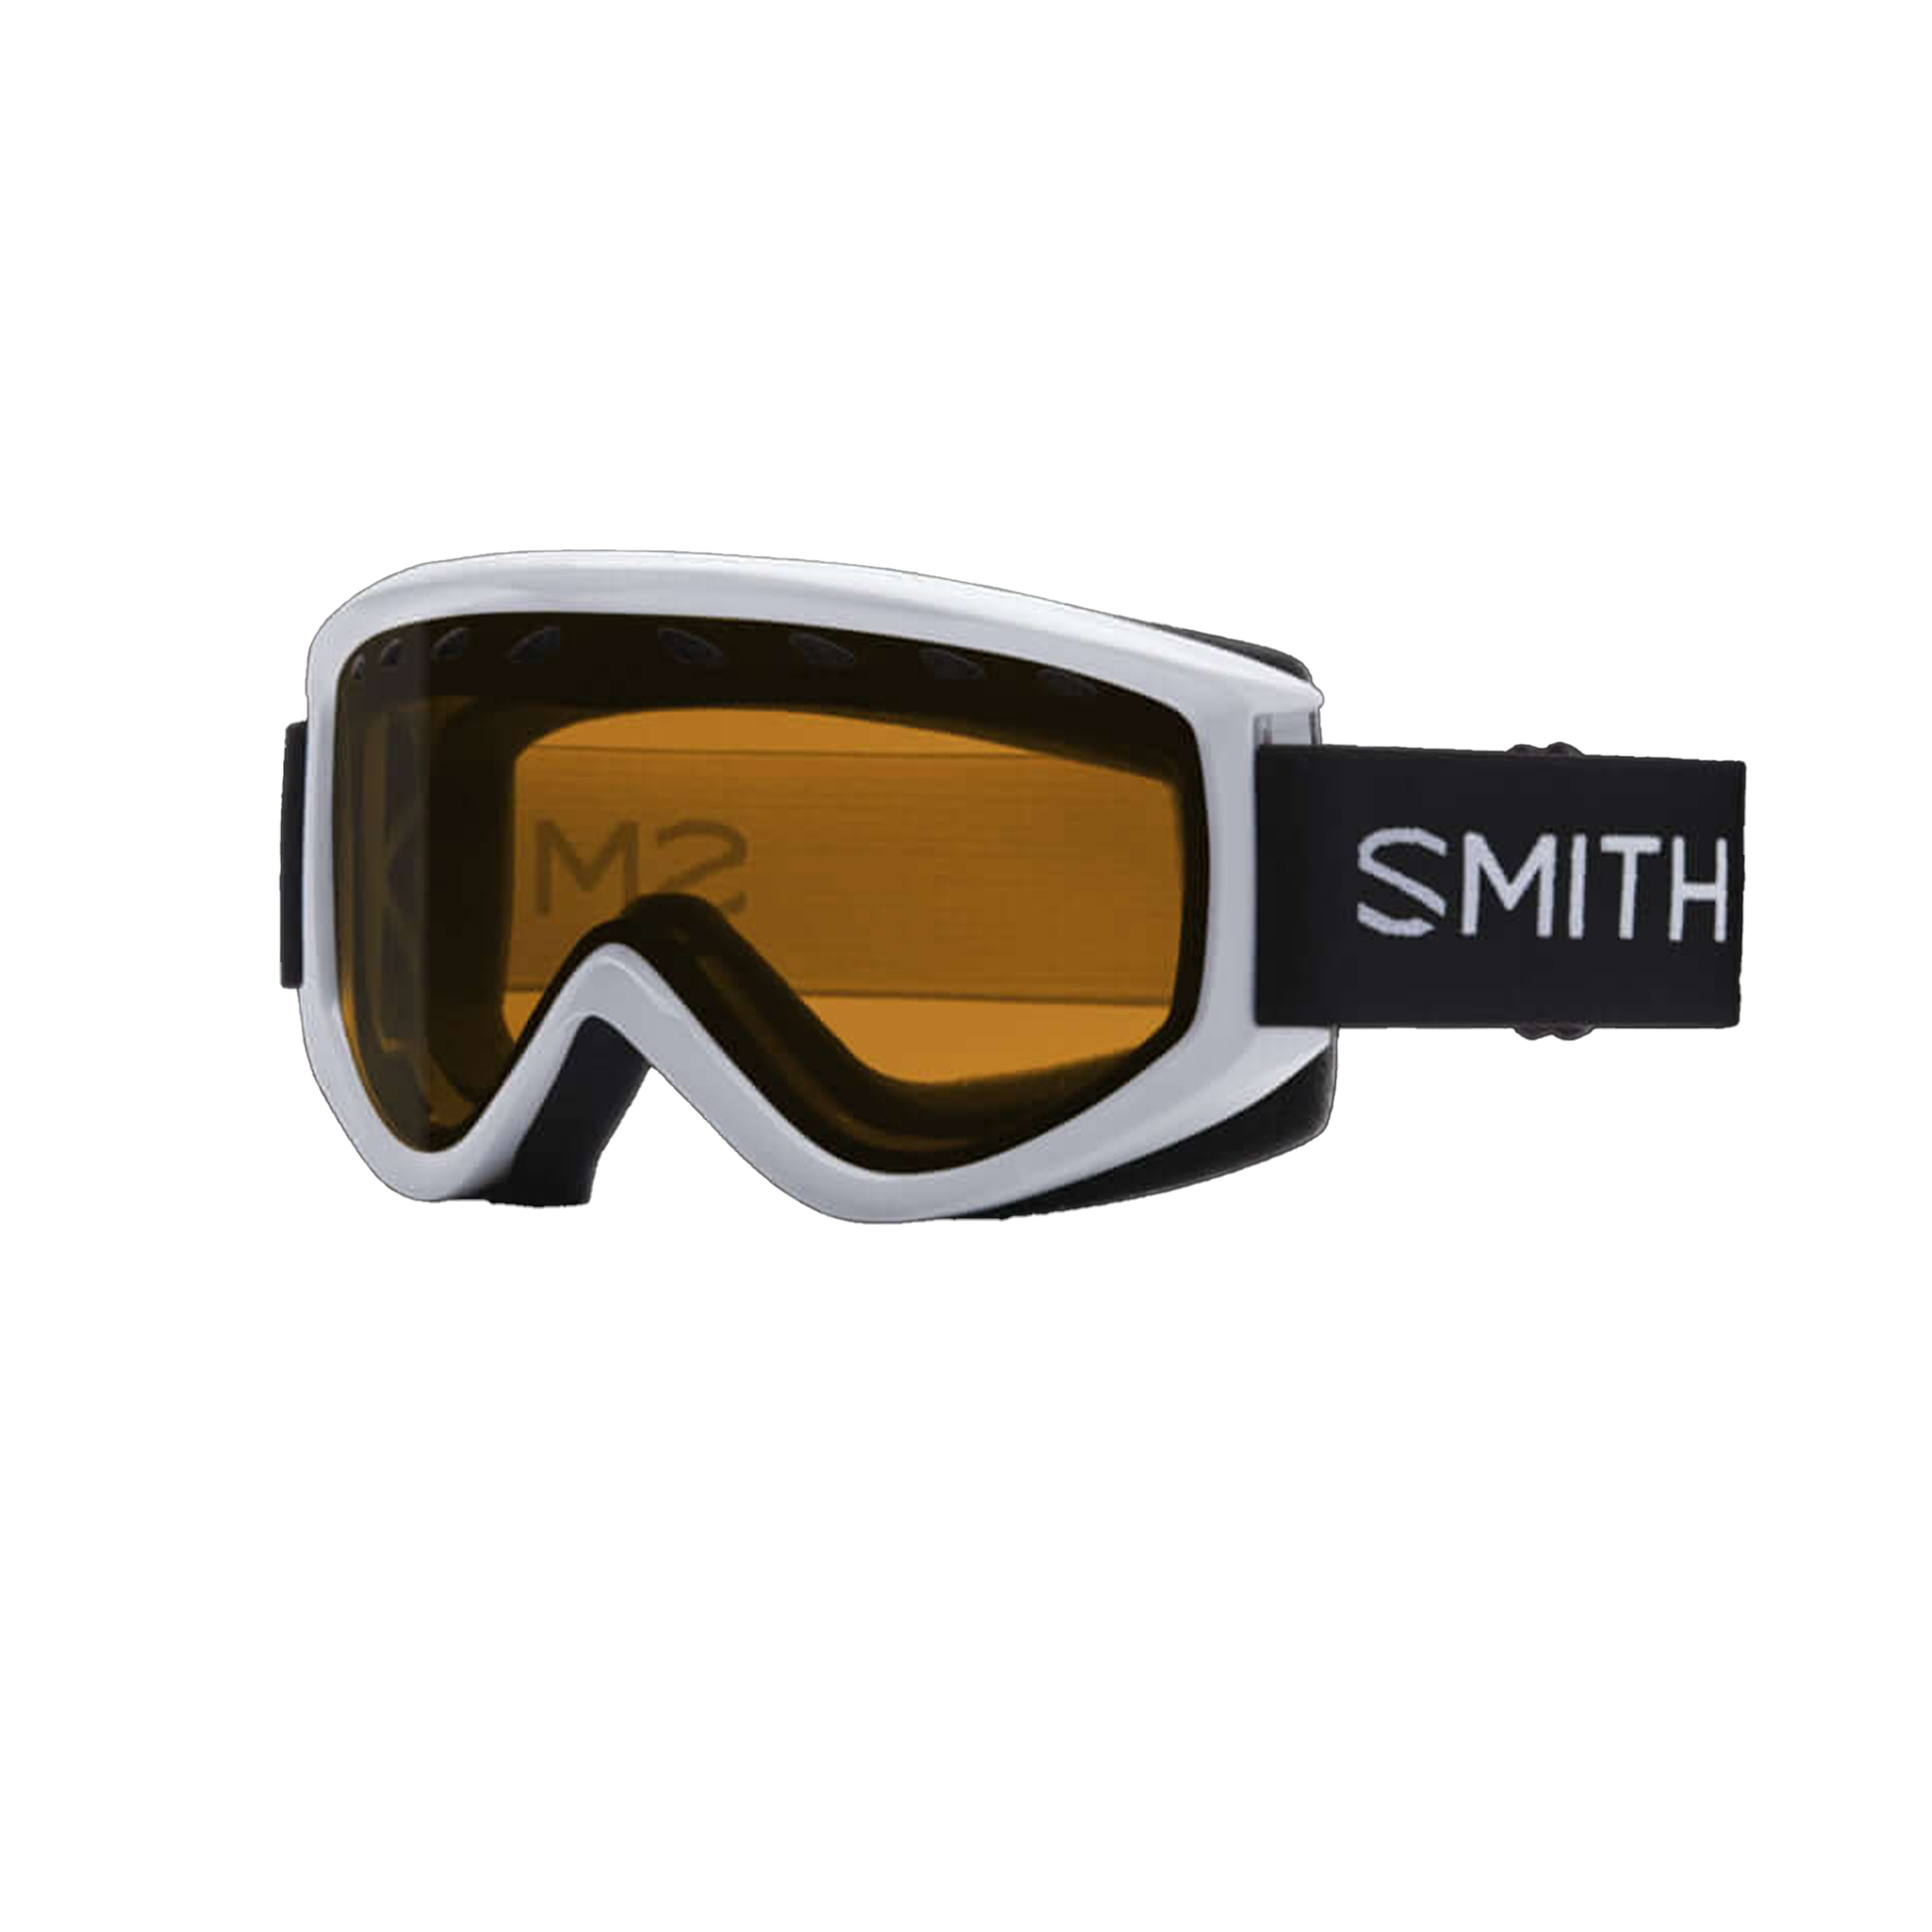 Smith Women's Electra Snow Goggle White Gold Lite - Smith Snow Goggles